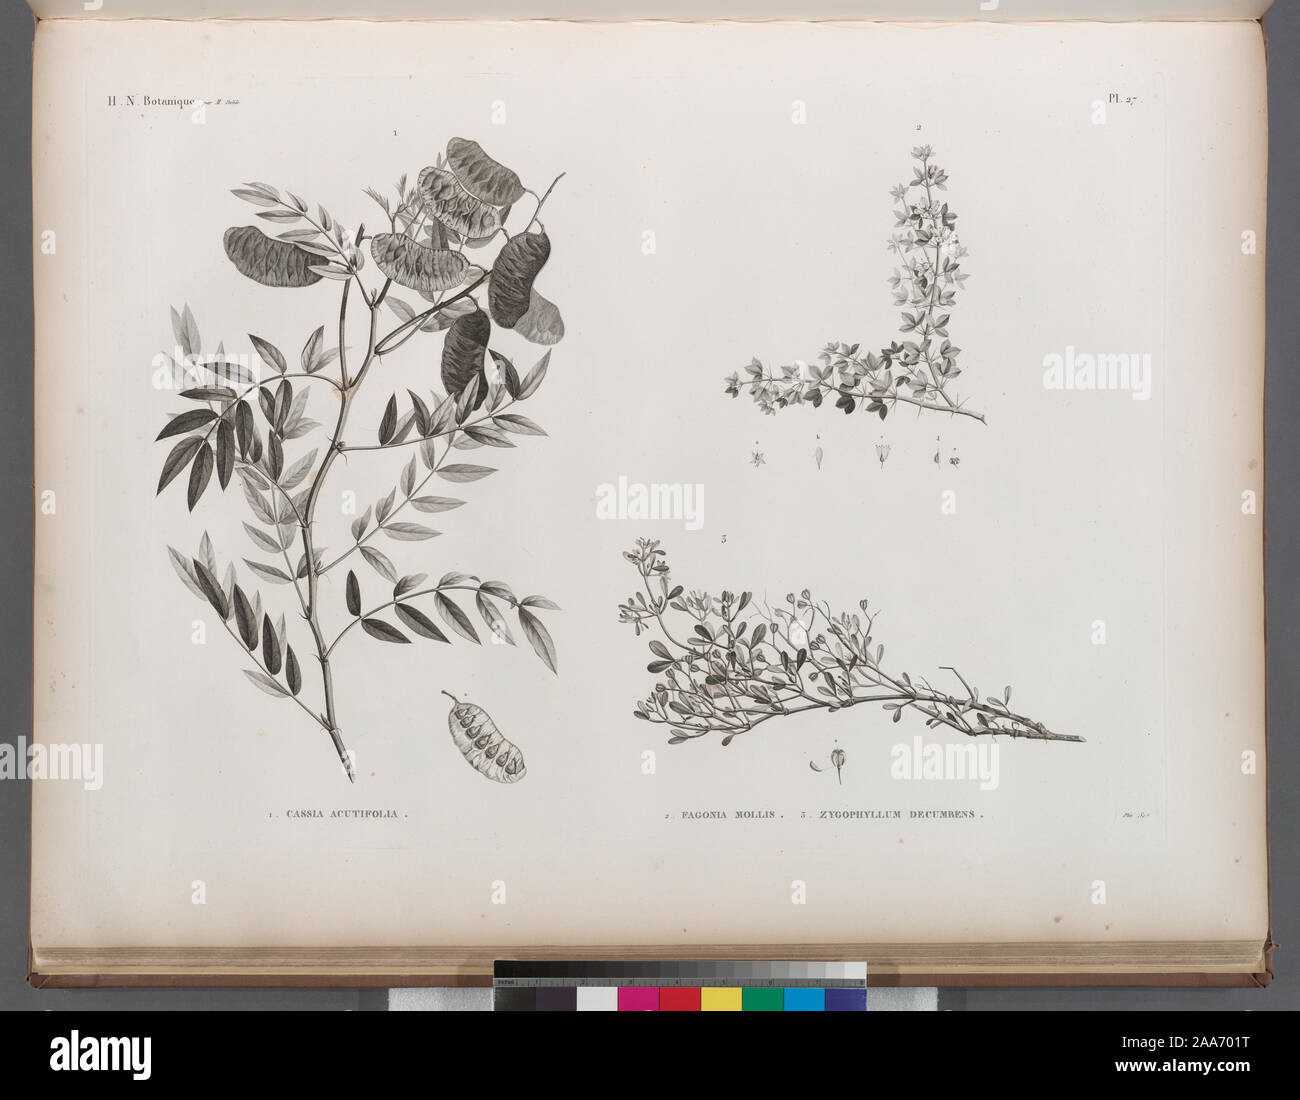 Botanique. 1. Cassia acutifolia; 2. Fagonia mollis; 3. Zygophyllum decumbens.; Botanique. 1. Cassia acutifolia; 2. Fagonia mollis; 3. Zygophyllum decumbens. Stock Photo